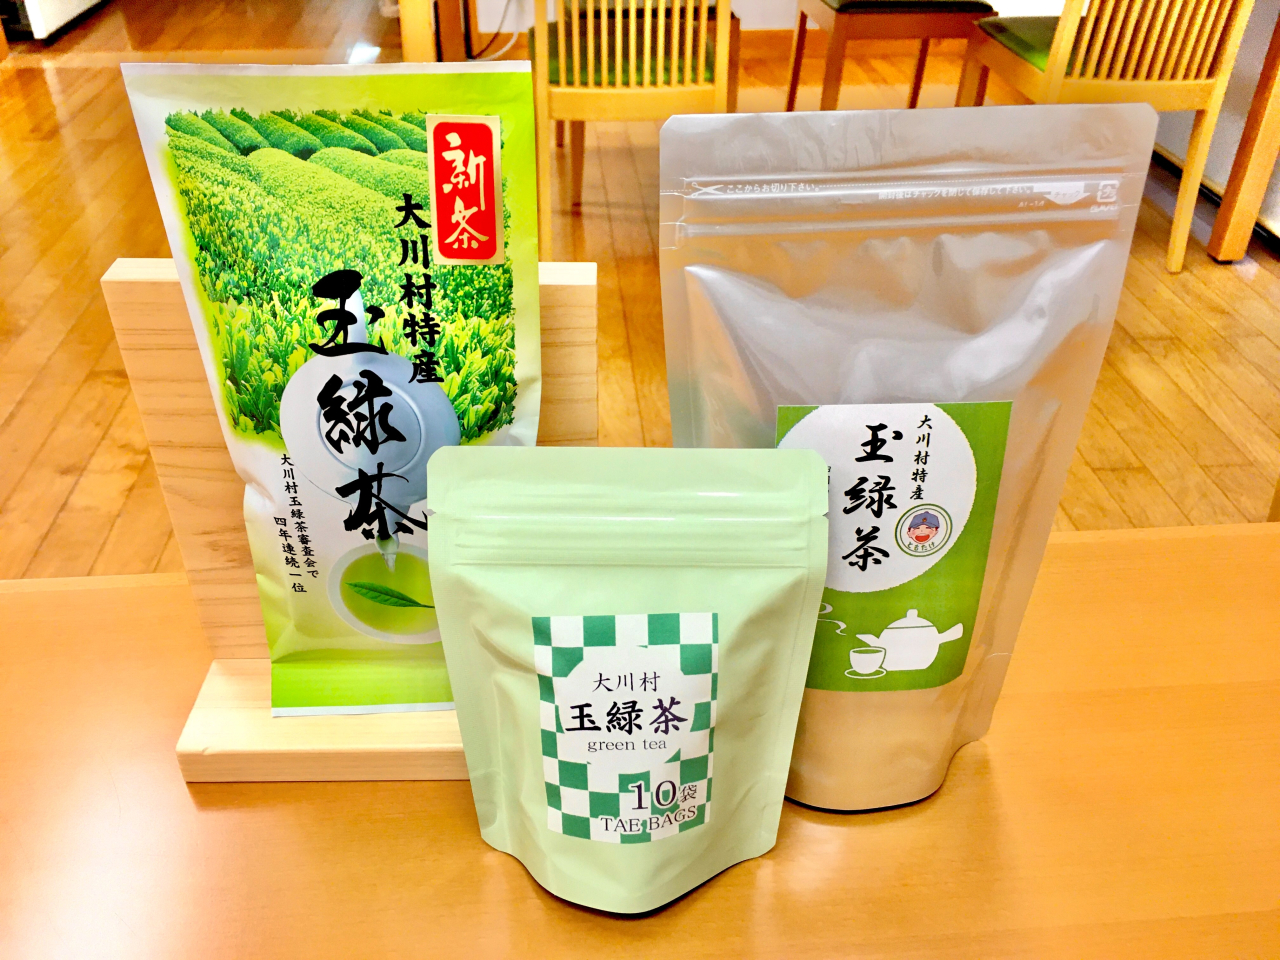 お土産玉緑茶